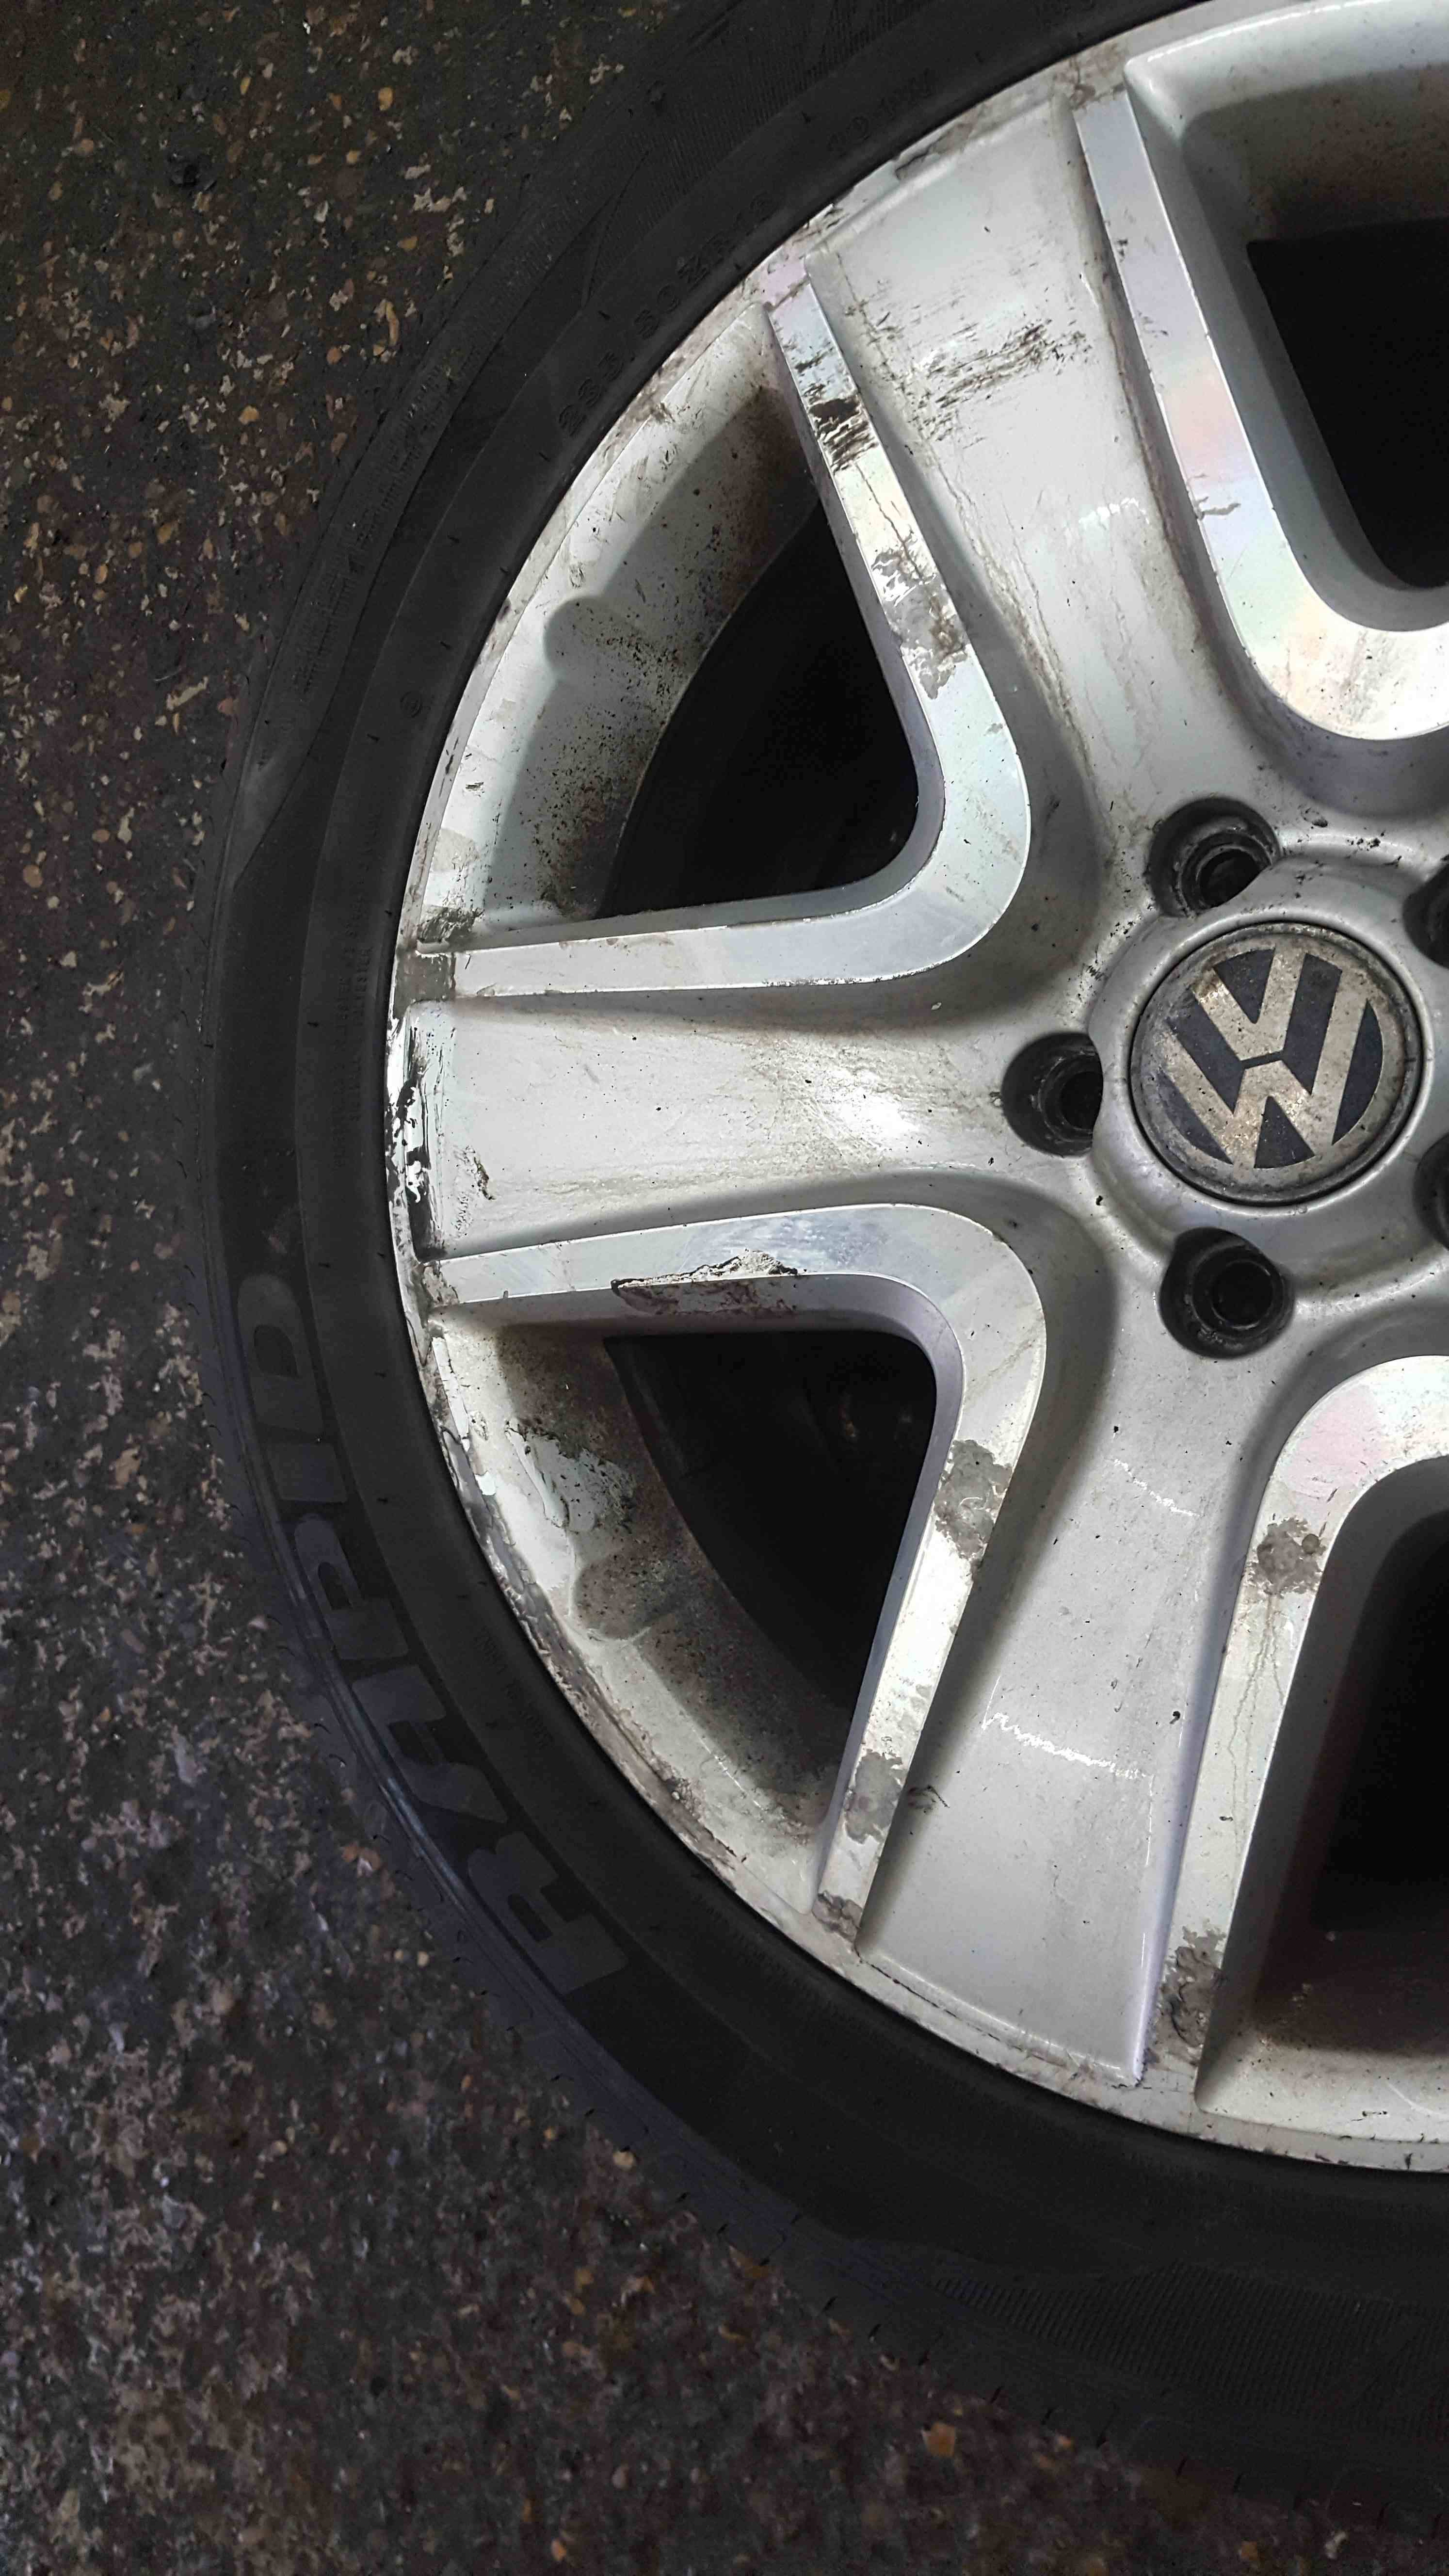 Volkswagen Tiguan 2007-2011 Pasadena Alloy Wheel  35 2355018 5N0601025q 6mm